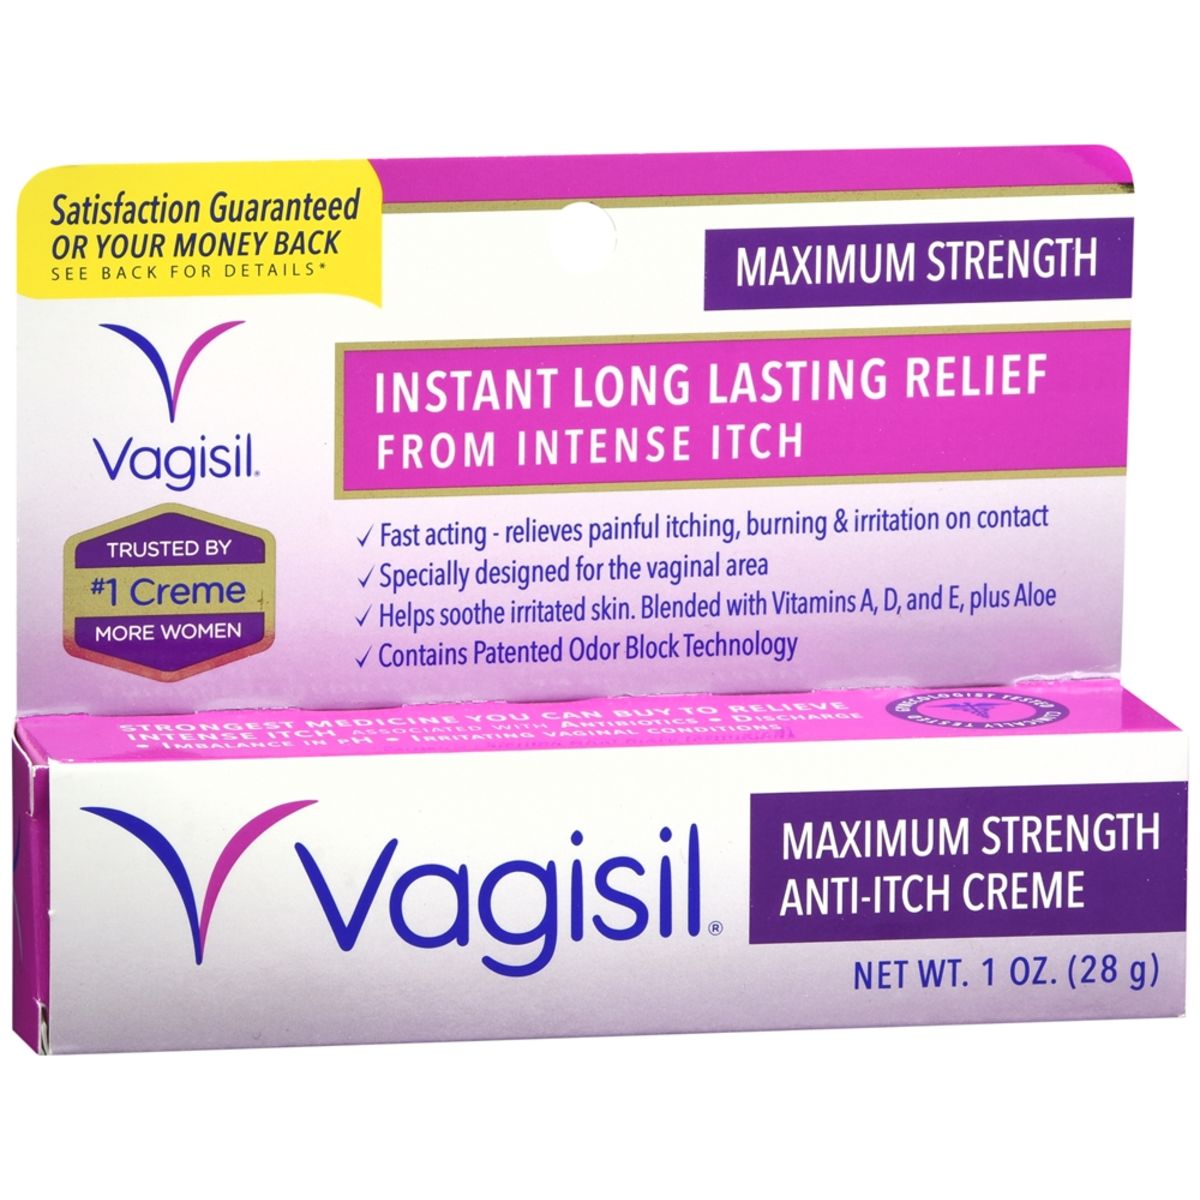 Vagisil Anti-Itch Creme Maximum Strength - 1 OZ